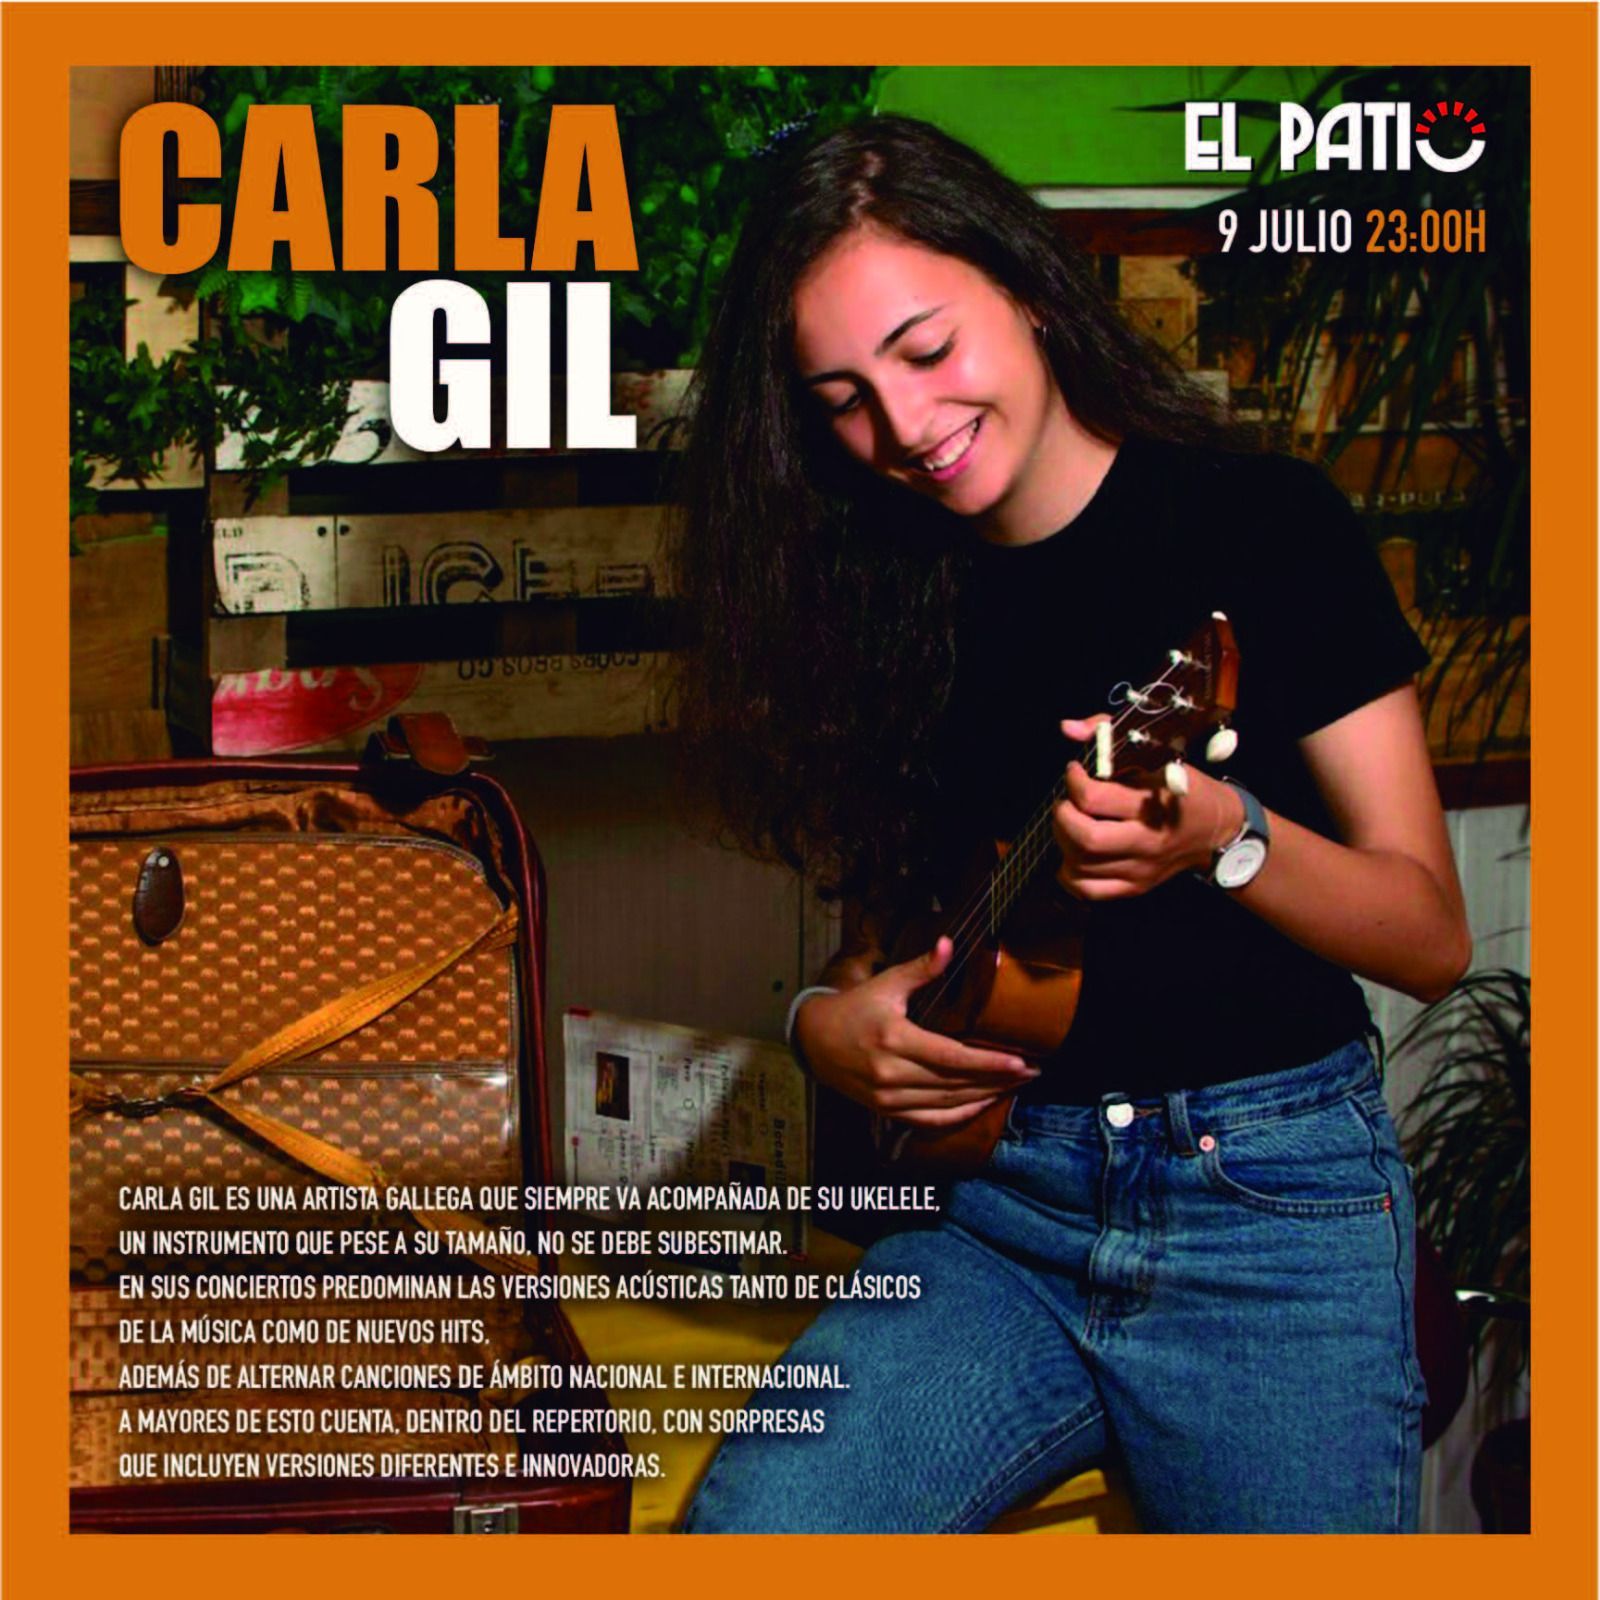 El cartel anunciador del concierto de Carla Gil.